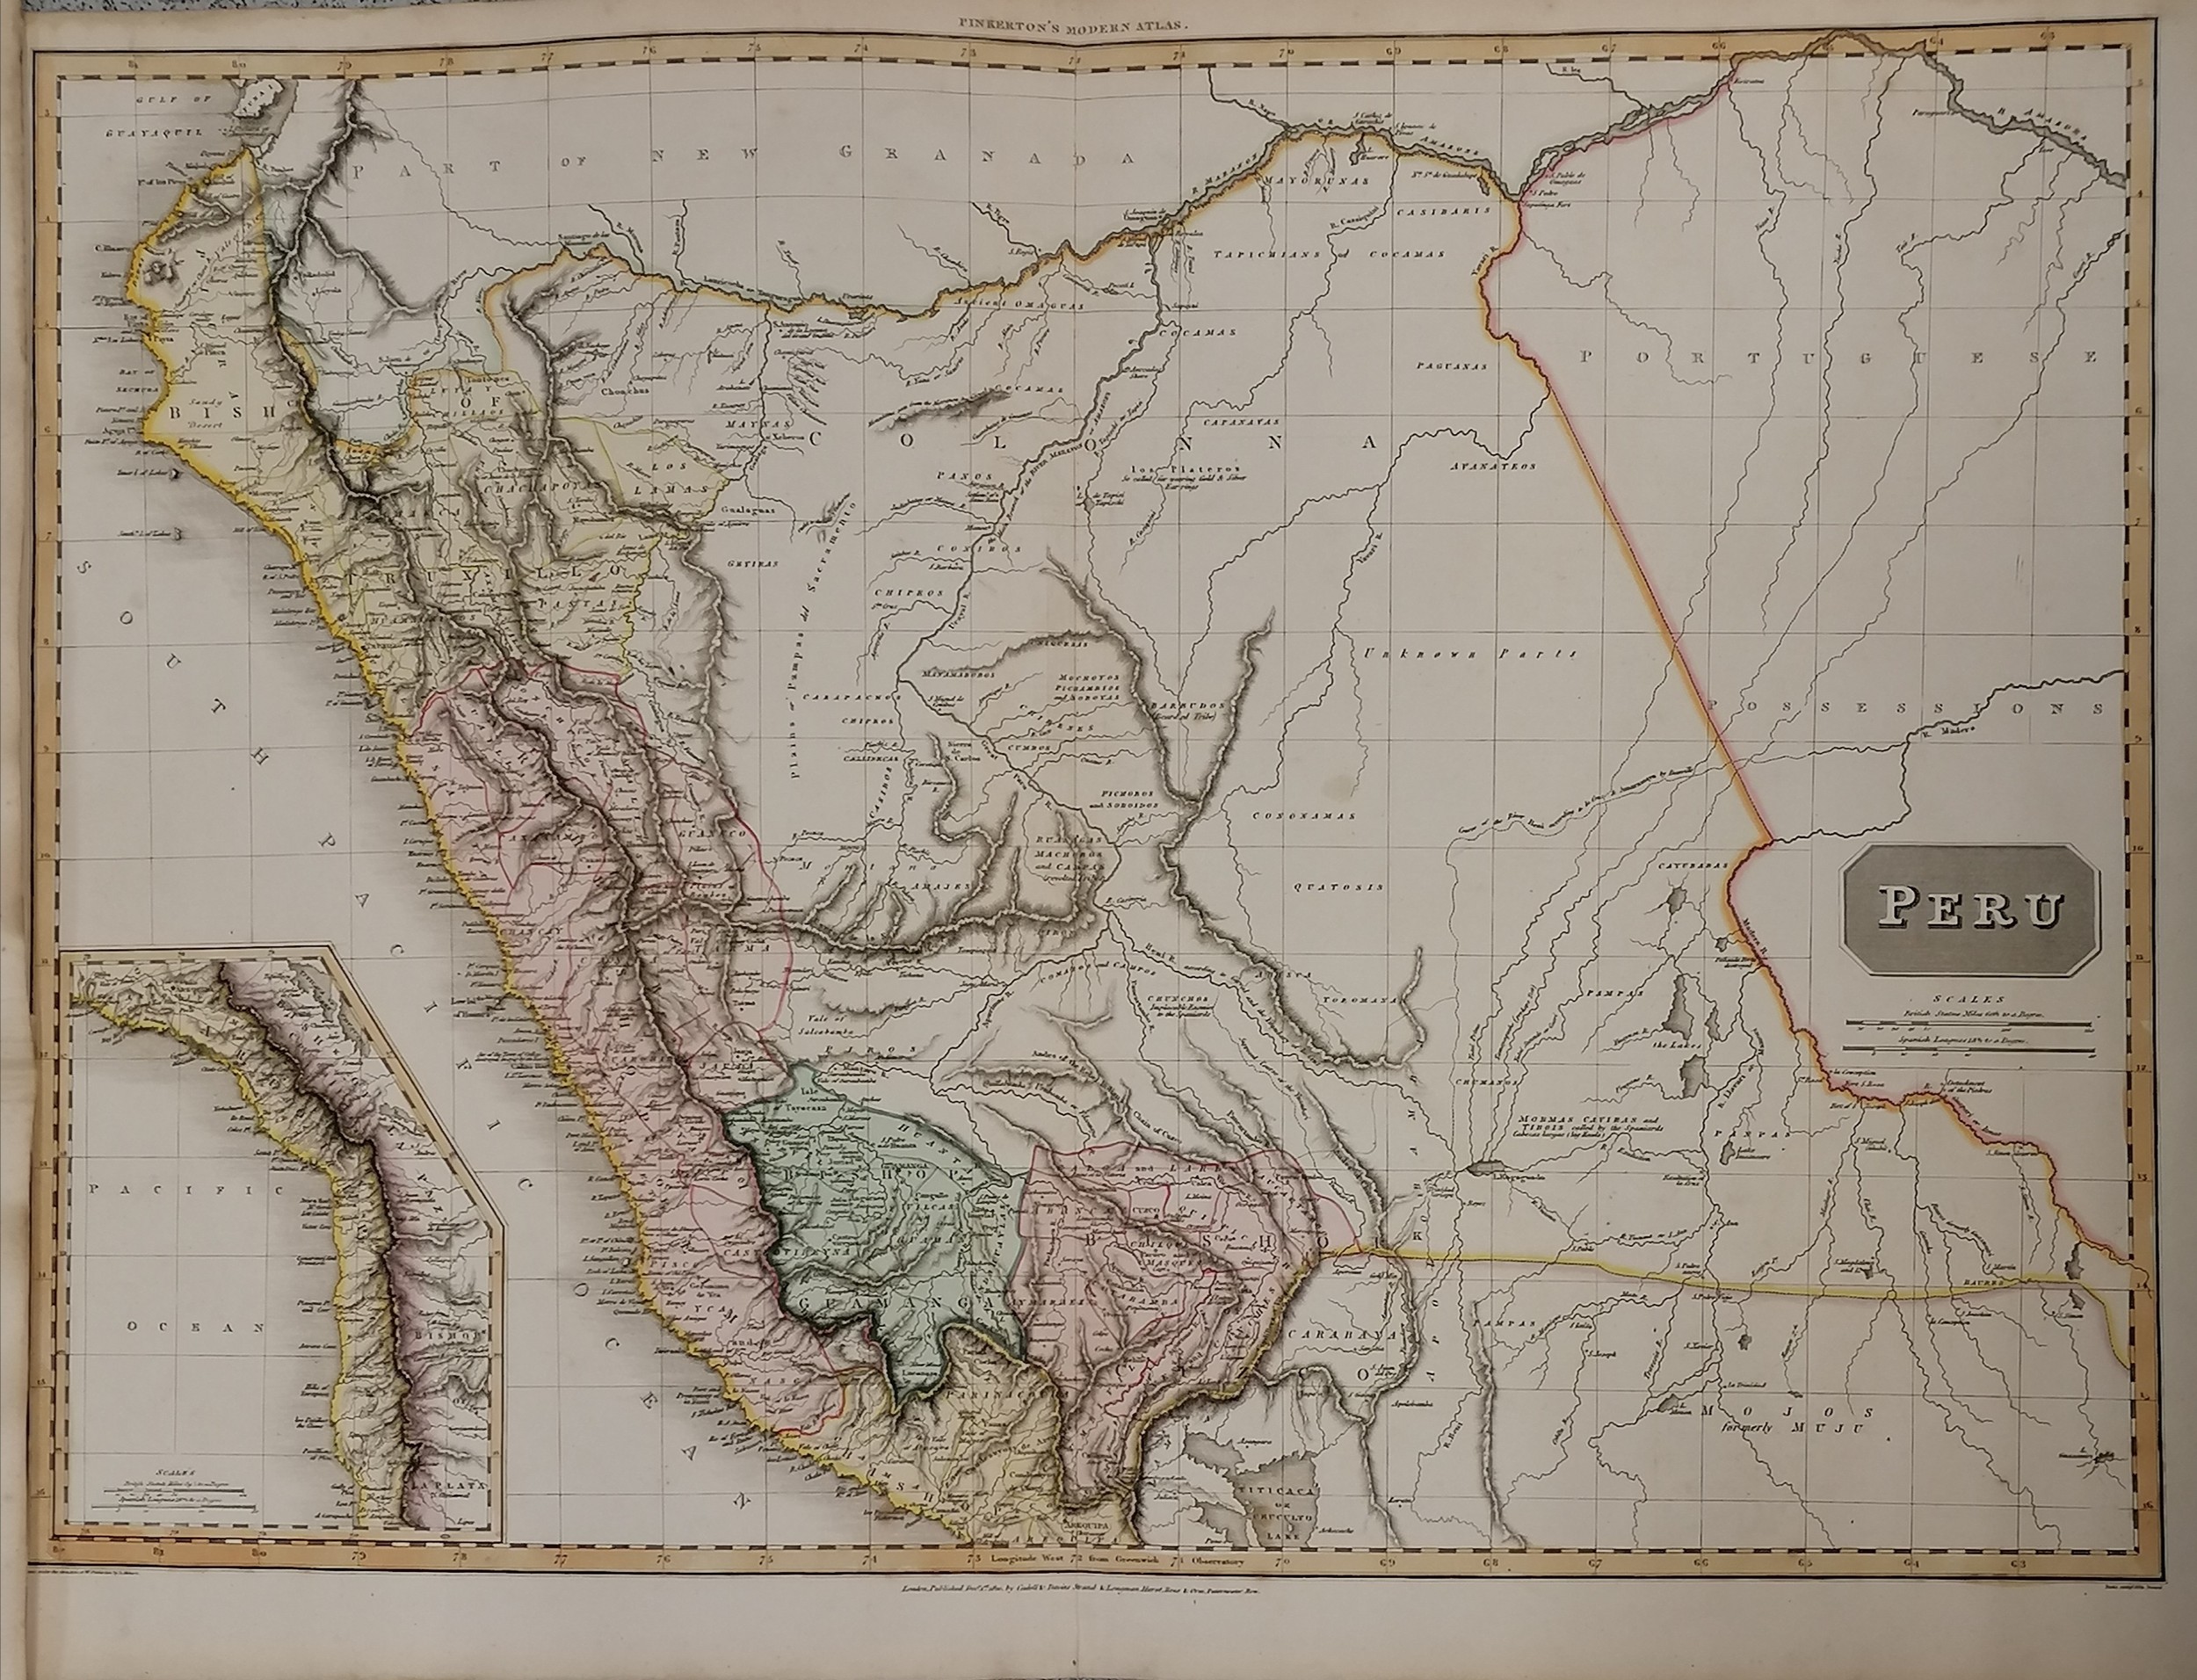 3 x large Pinkertons maps 1812 La Plata, 1810 Peru & 1809 Chili (Chile) - 84cm x 55cm - Image 4 of 6